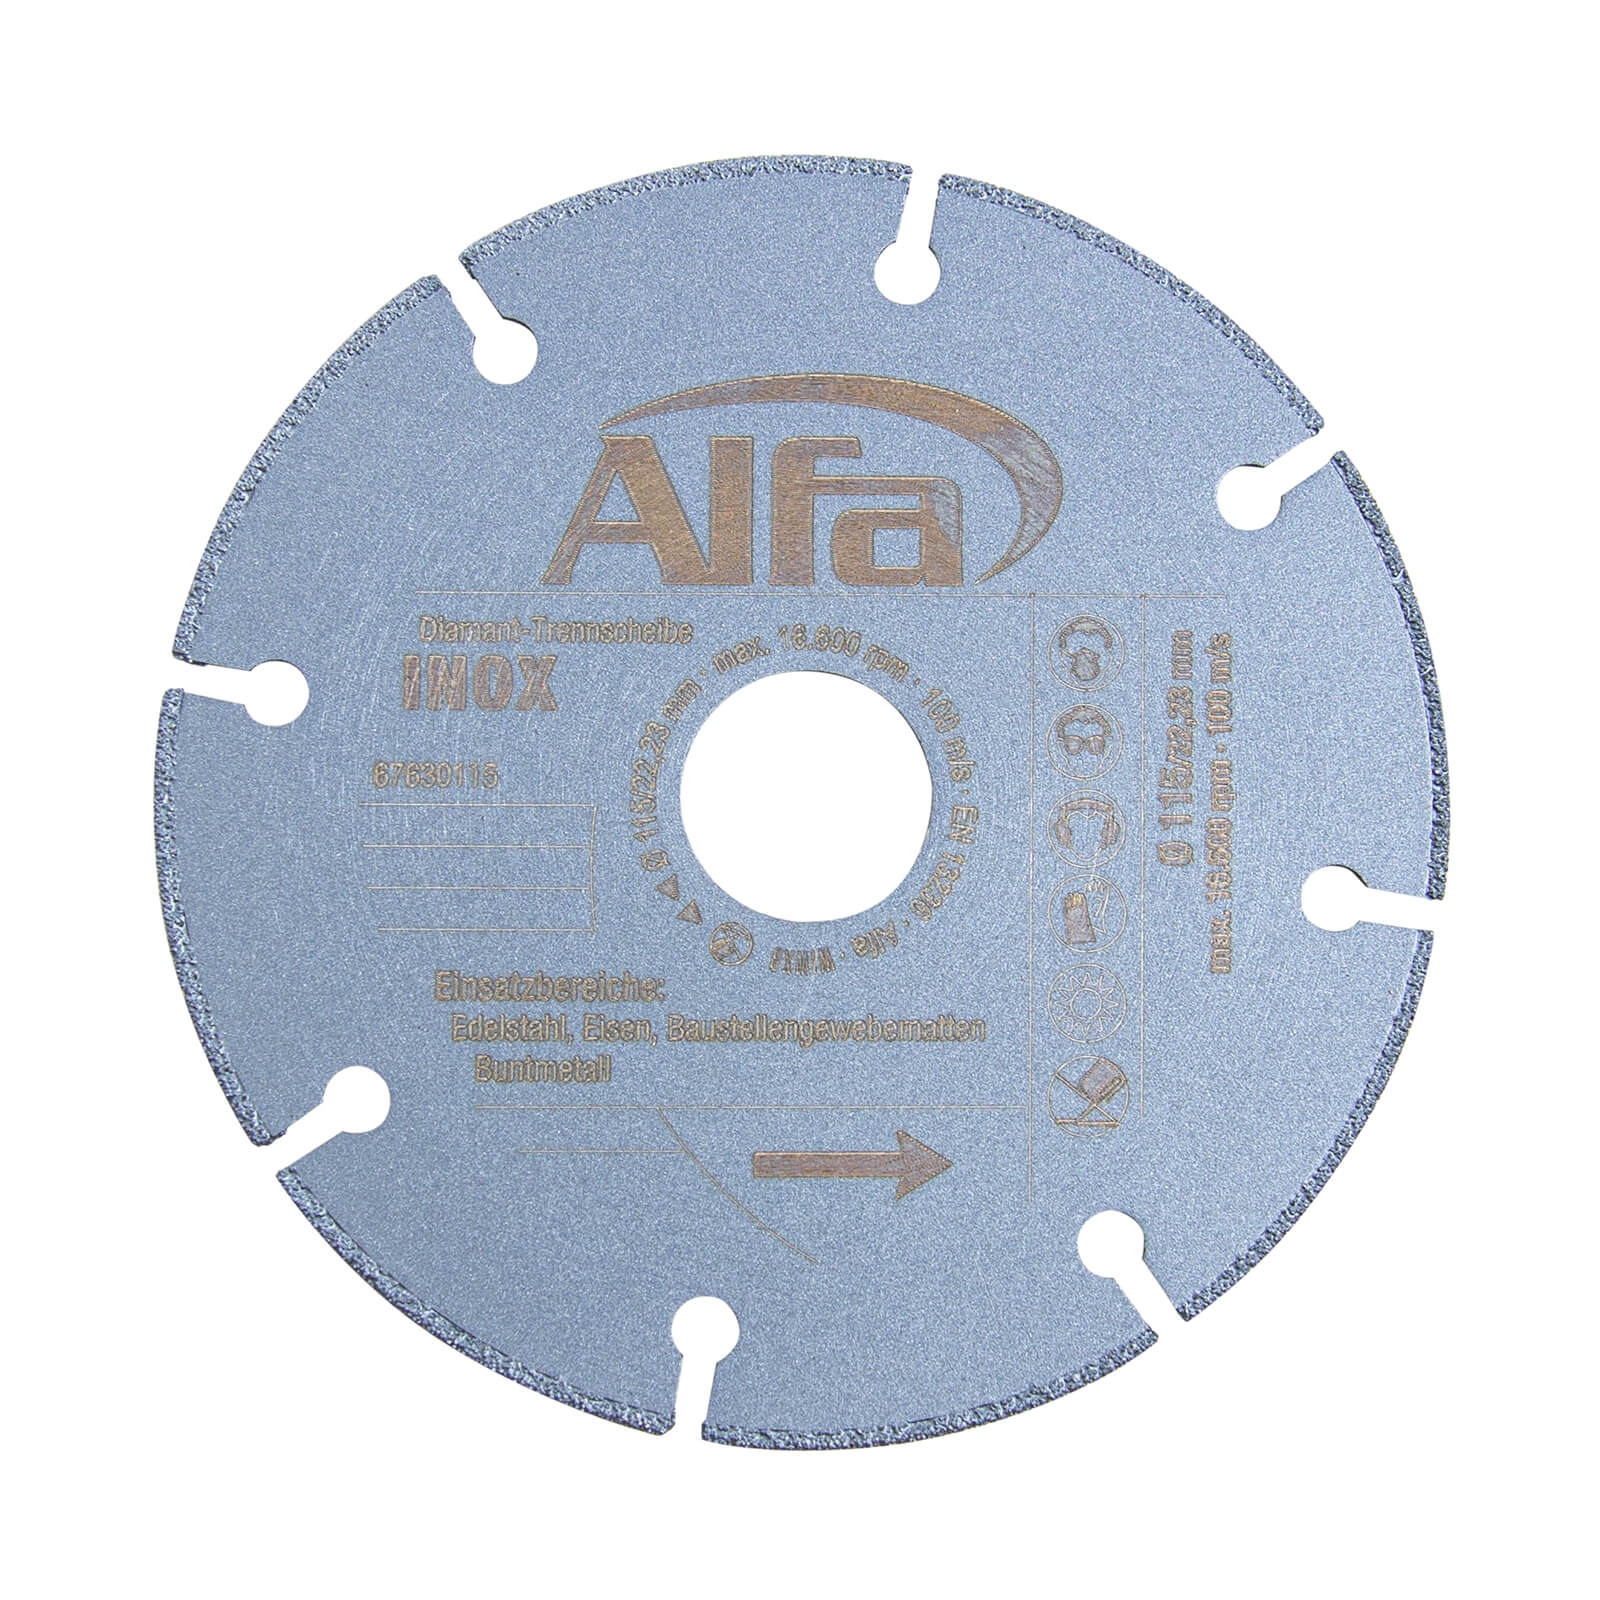 688 ALFA disque de tronçonnage en métal